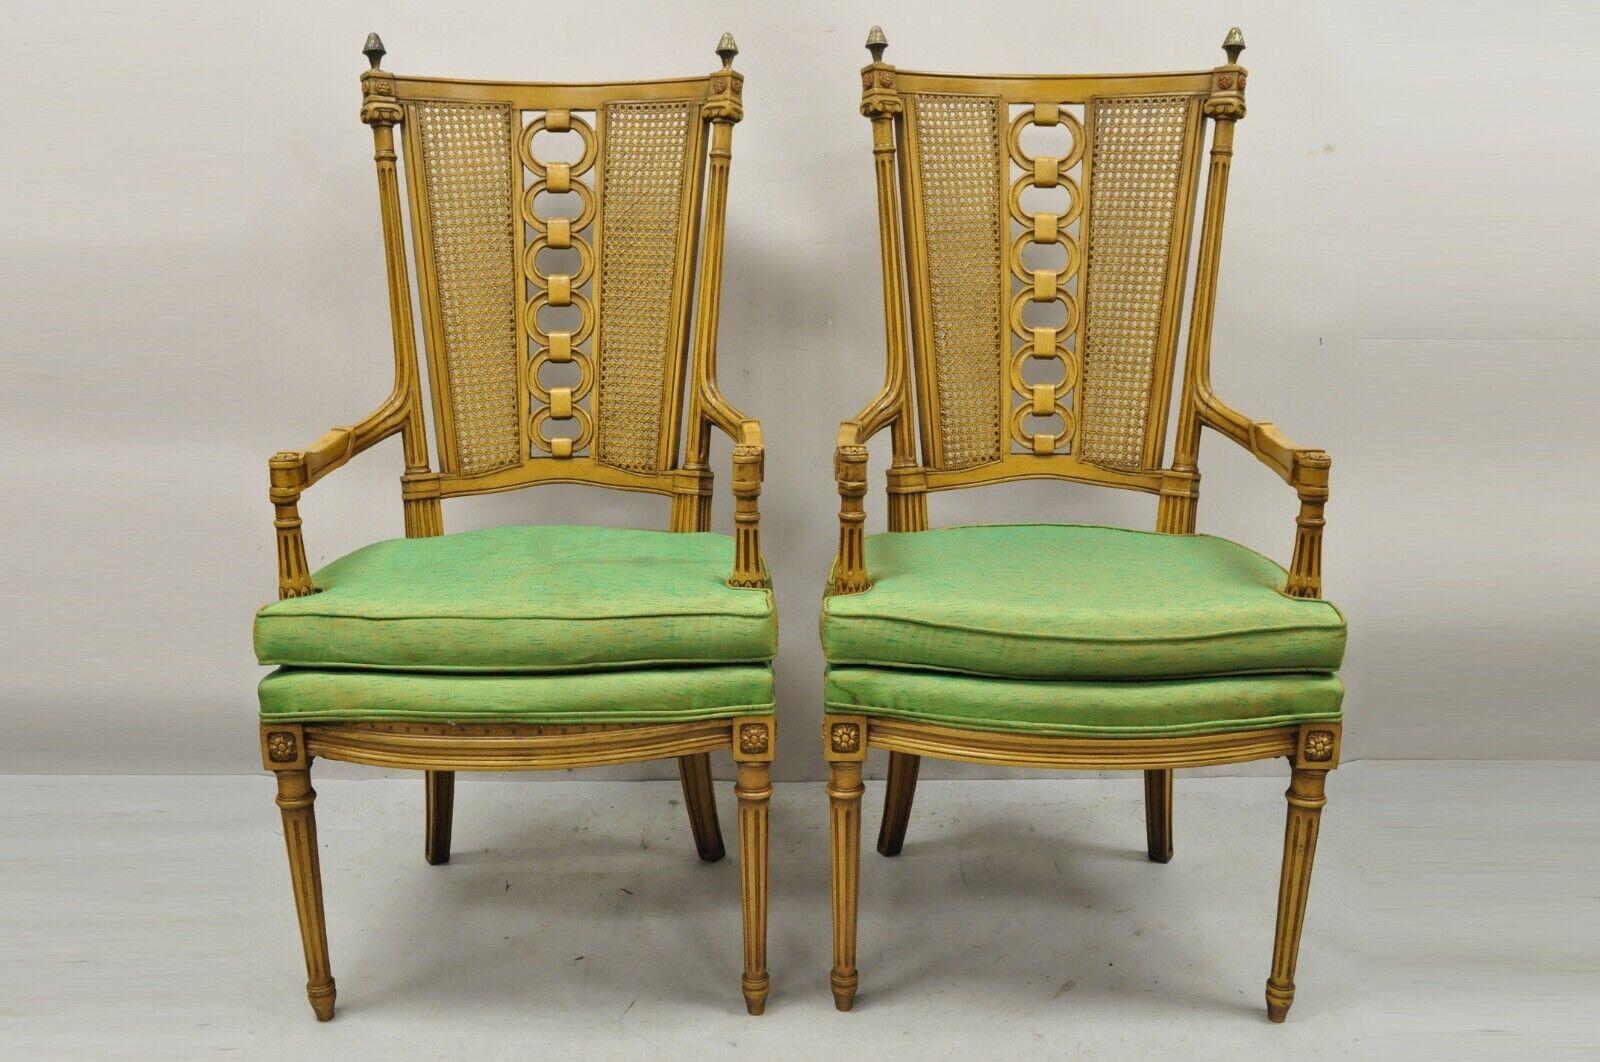 Chaises à dossier canné sculpté Vintage French Hollywood Regency - une paire. Cette pièce présente un dossier en rotin, des fleurons en laiton, un cadre en bois massif, un beau grain de bois, des détails joliment sculptés, des pieds fuselés, une